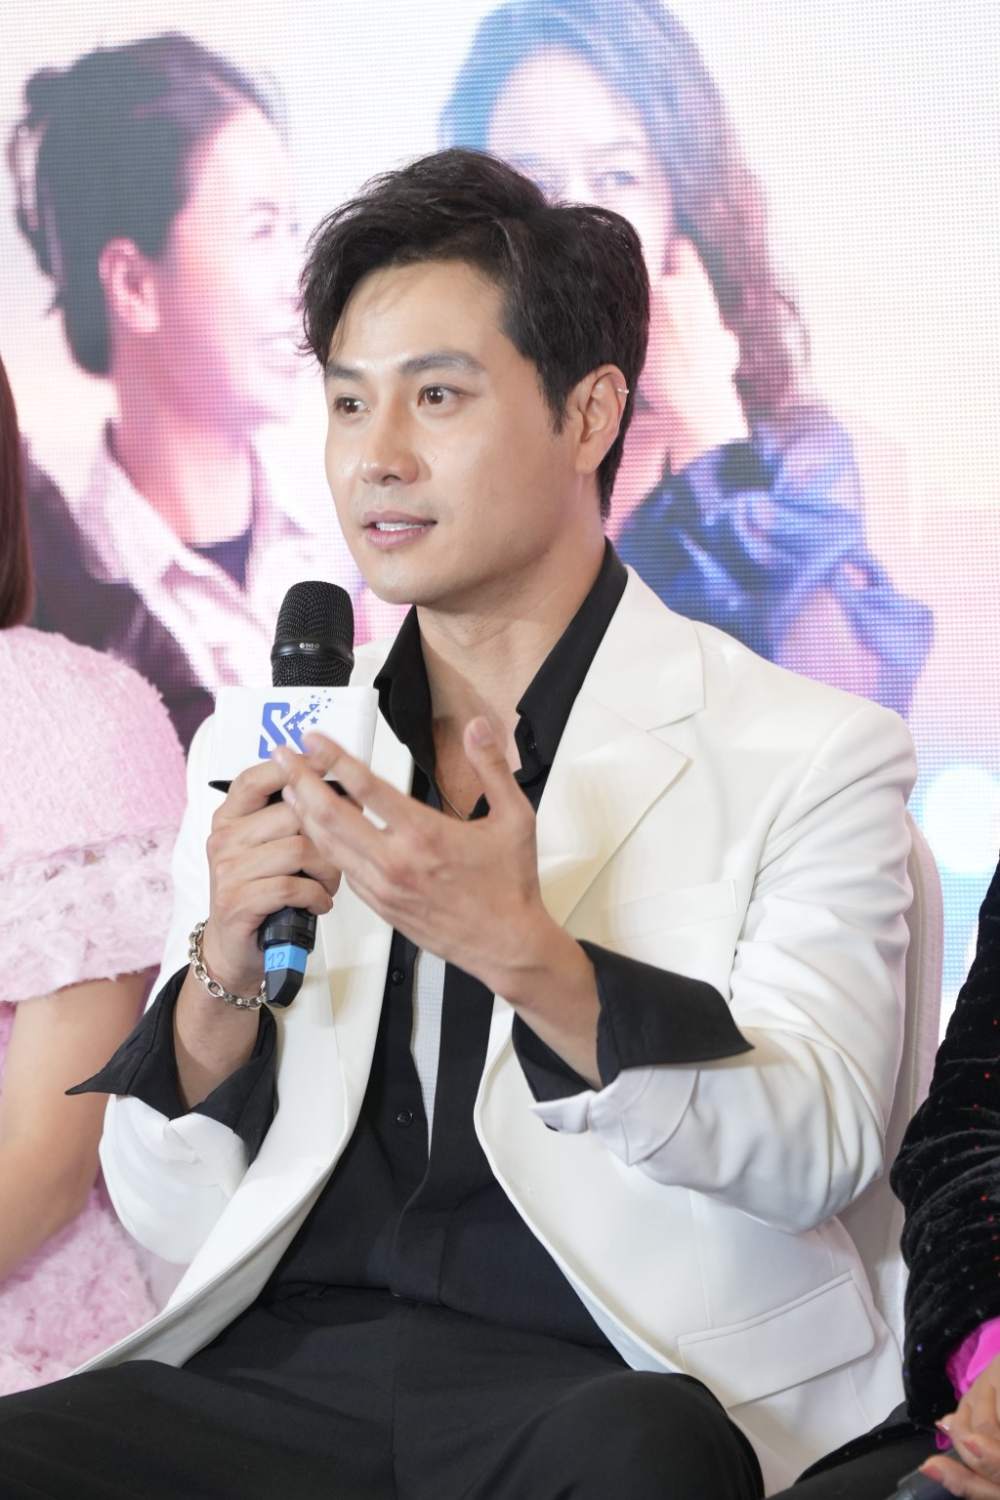 Diễn viên Thanh Sơn tại buổi họp báo ra mắt phim “Mình yêu nhau, bình yên thôi“. Ảnh: VFC.